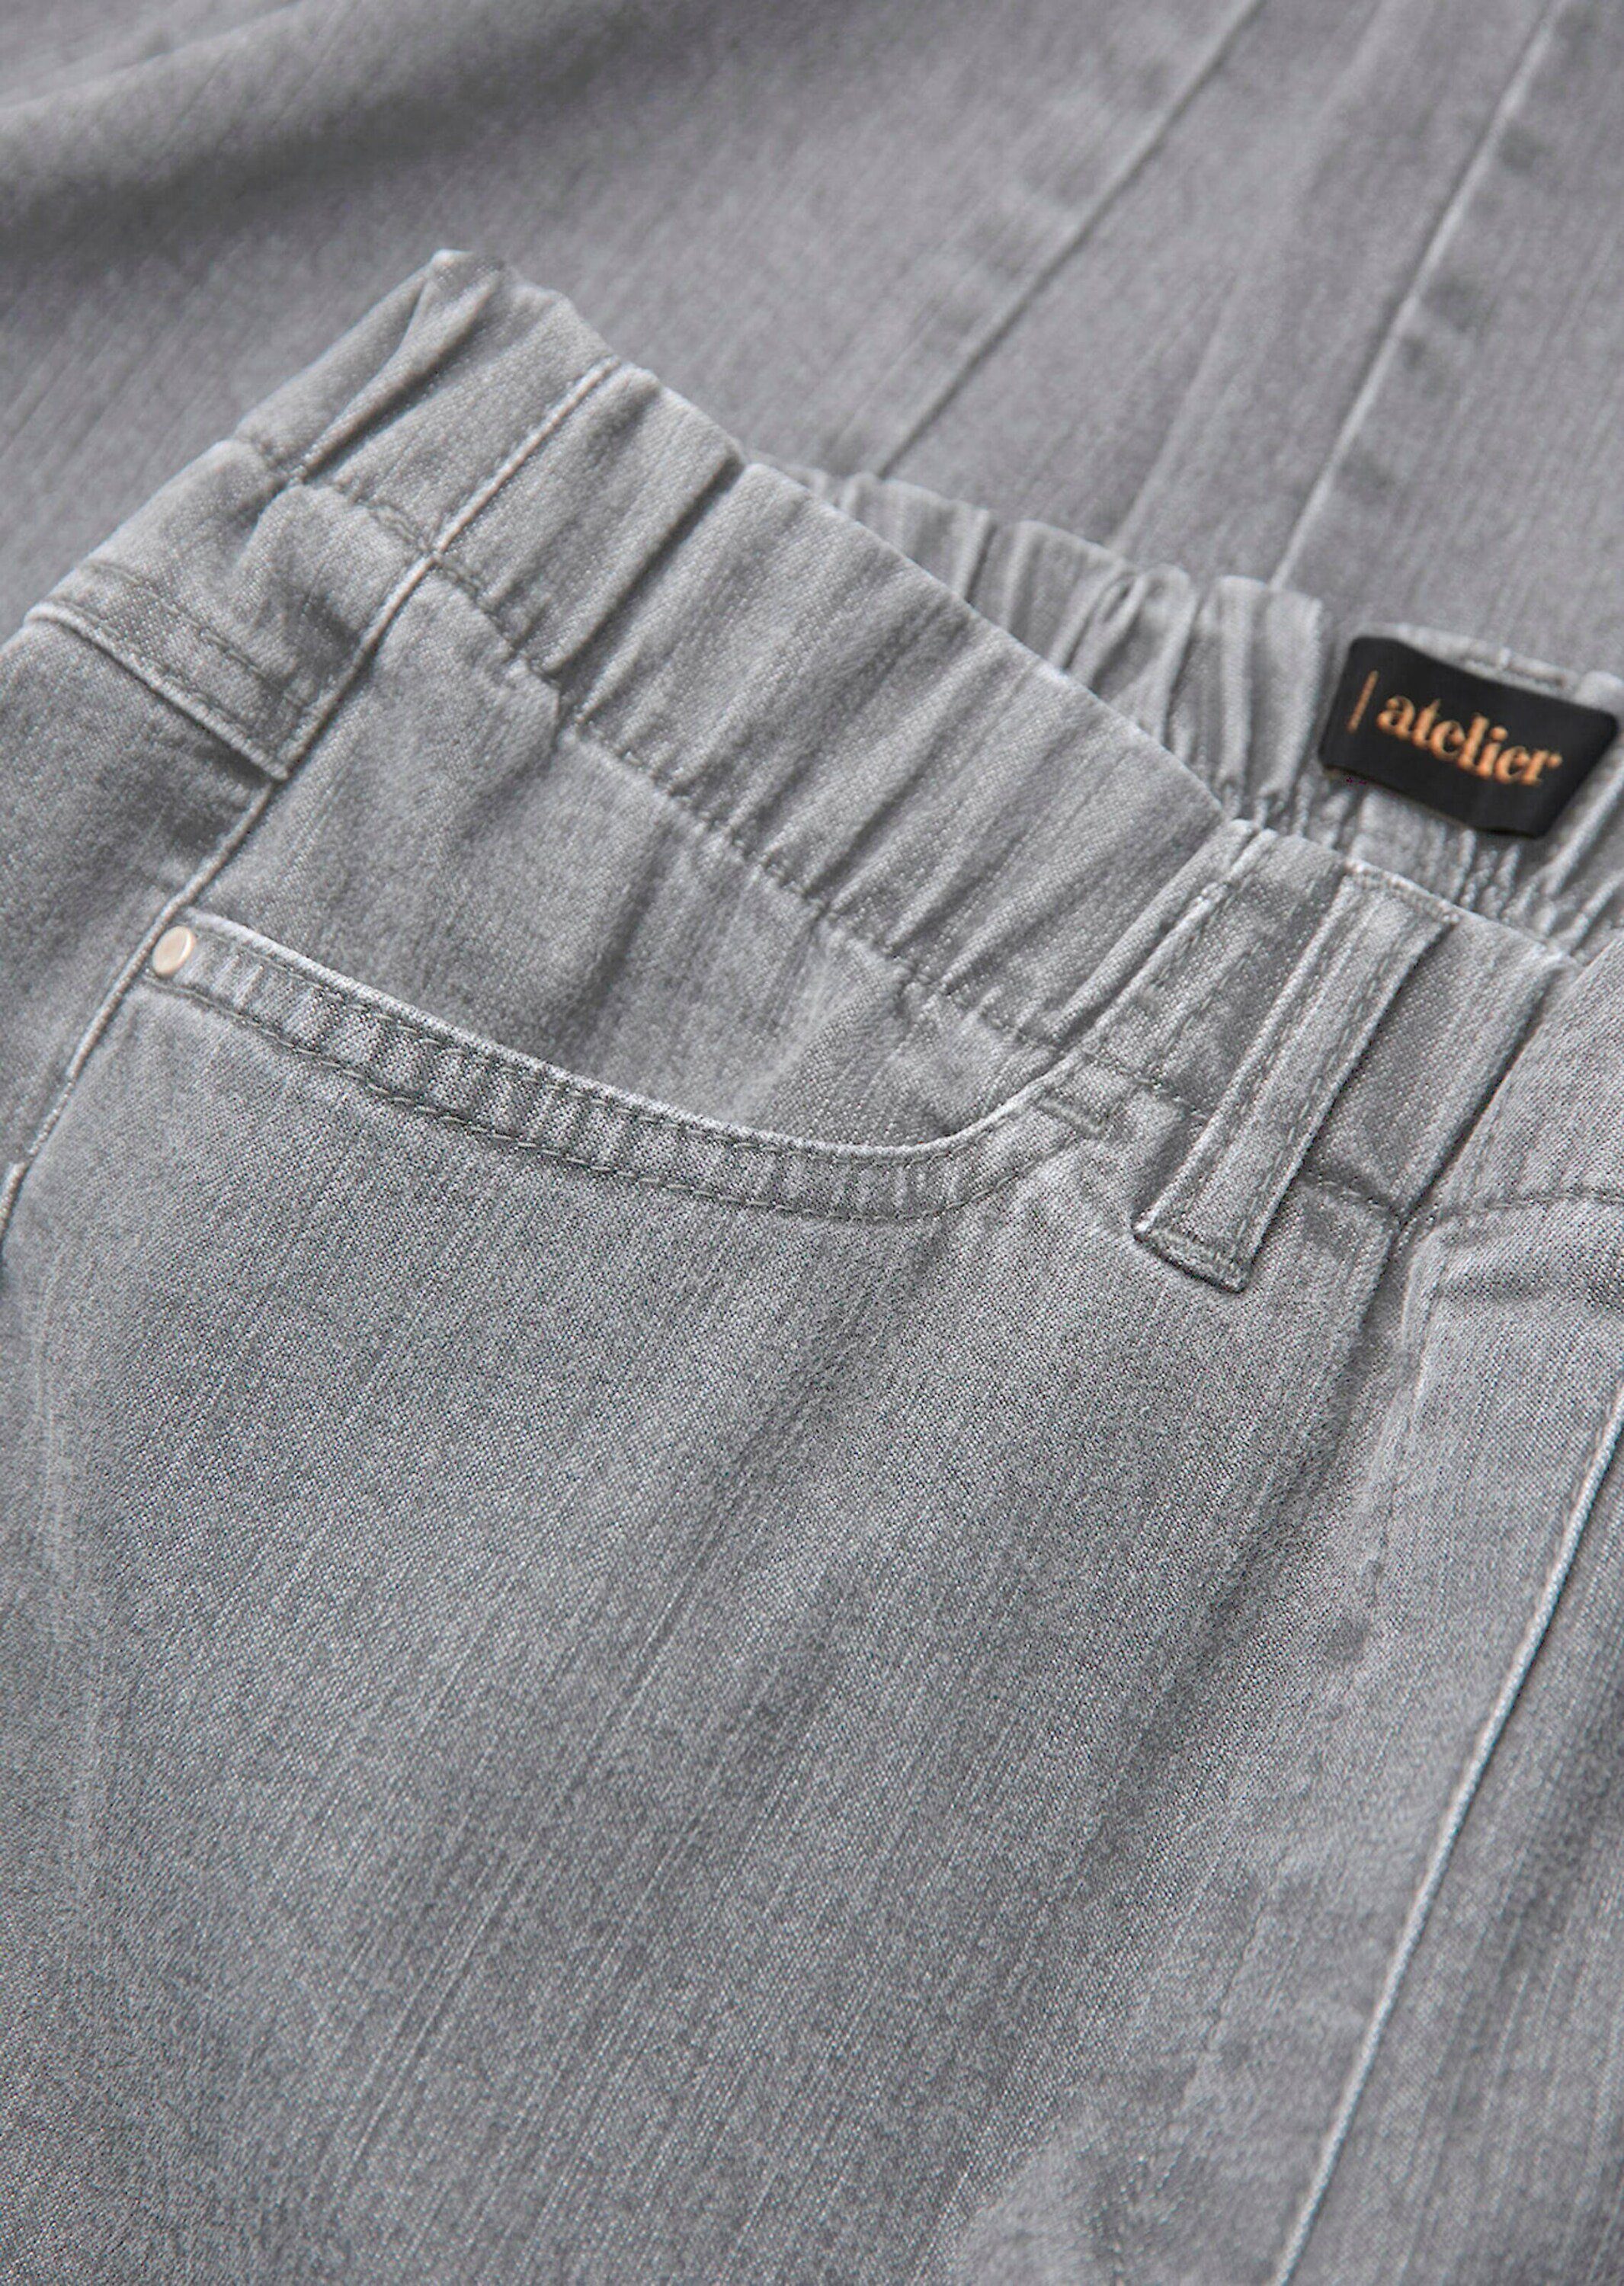 Klassische hellgrau Bequeme LOUISA Jeansschlupfhose Jeans GOLDNER Kurzgröße: